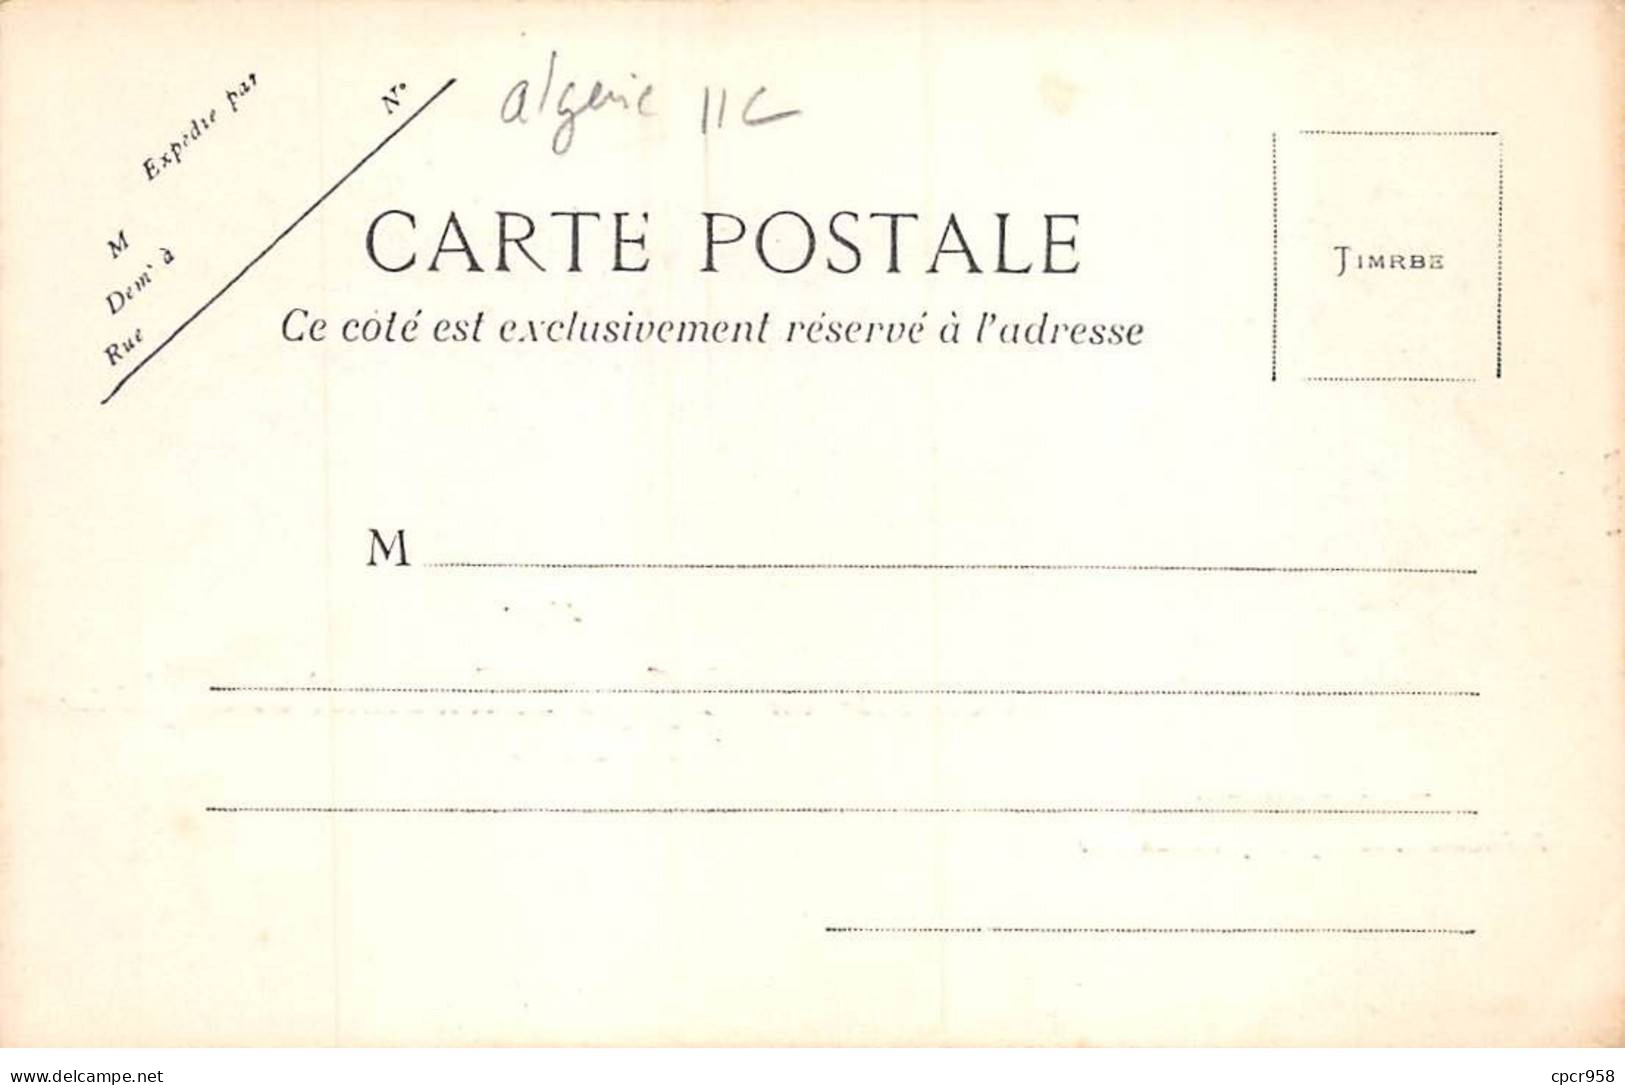 ALGERIE - SAN39357 - Souvenir Du Voyage Présidentiel - Avril 1903 Emile Loubet, Président De La République Française - Szenen